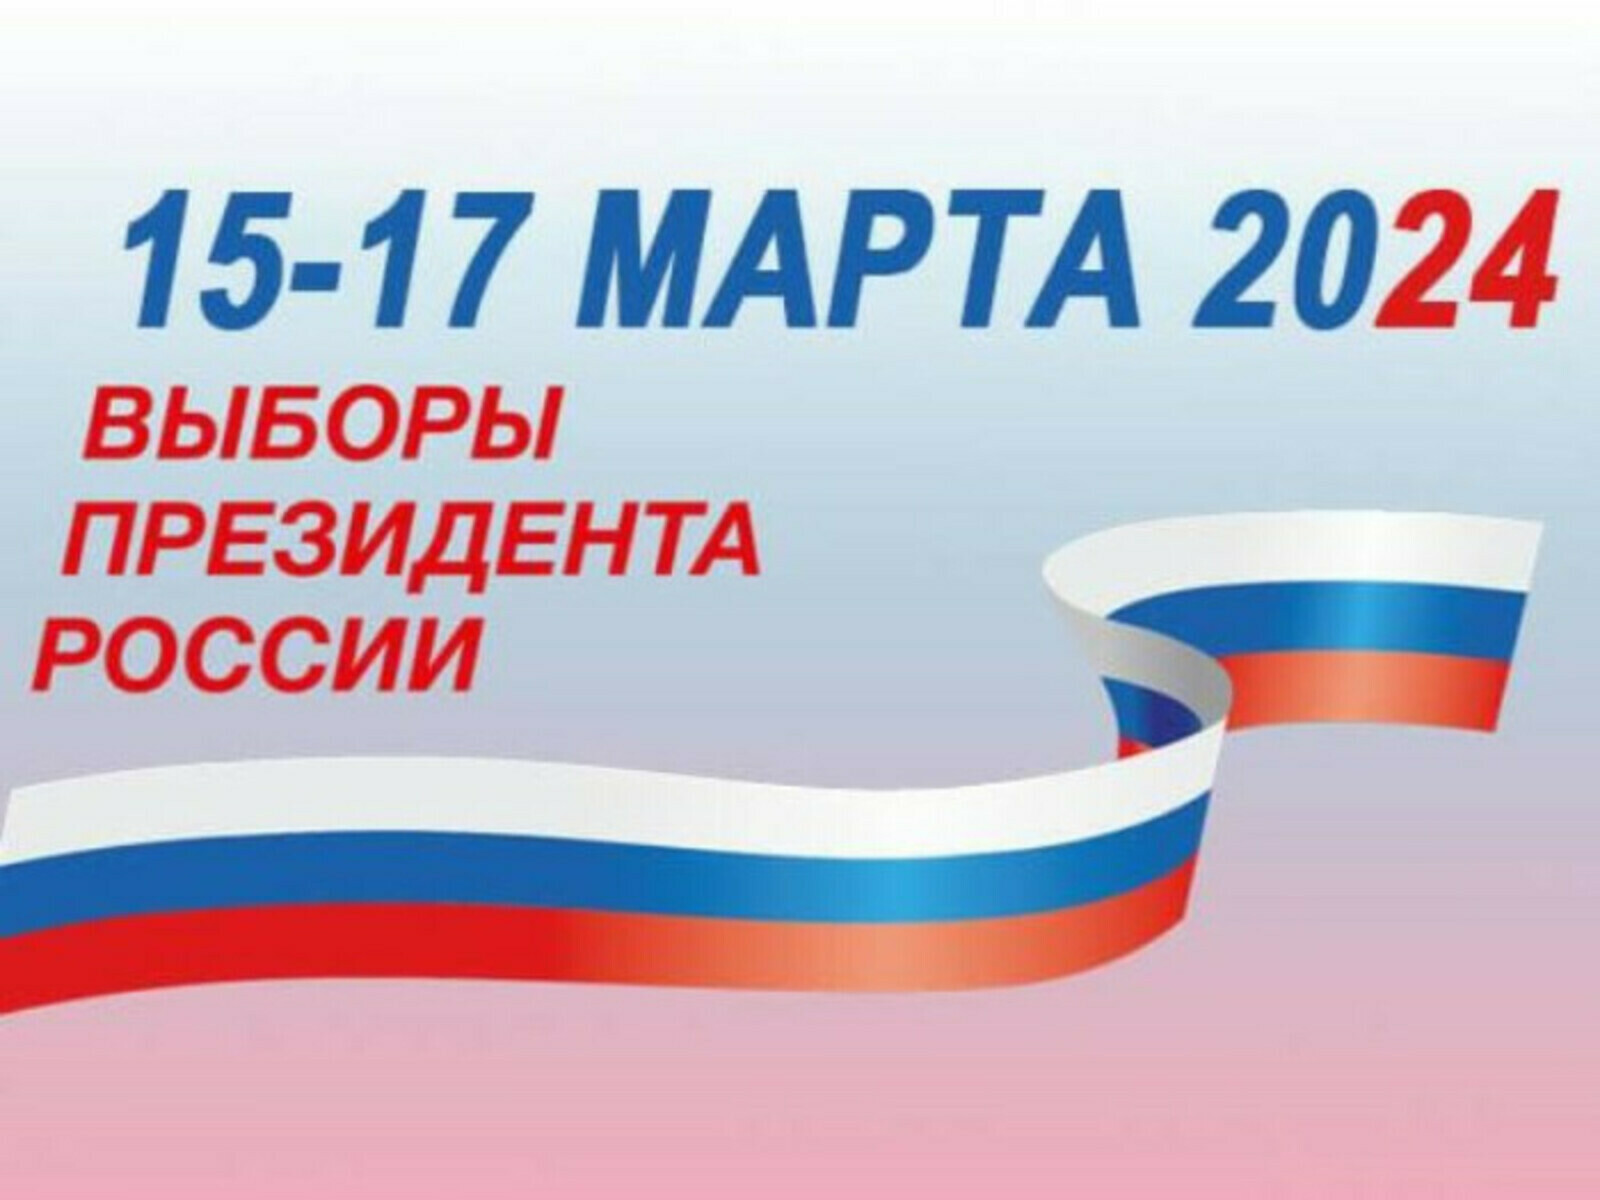 17 марта в Витебске граждане России смогут принять участие в выборах Президента Российской Федерации